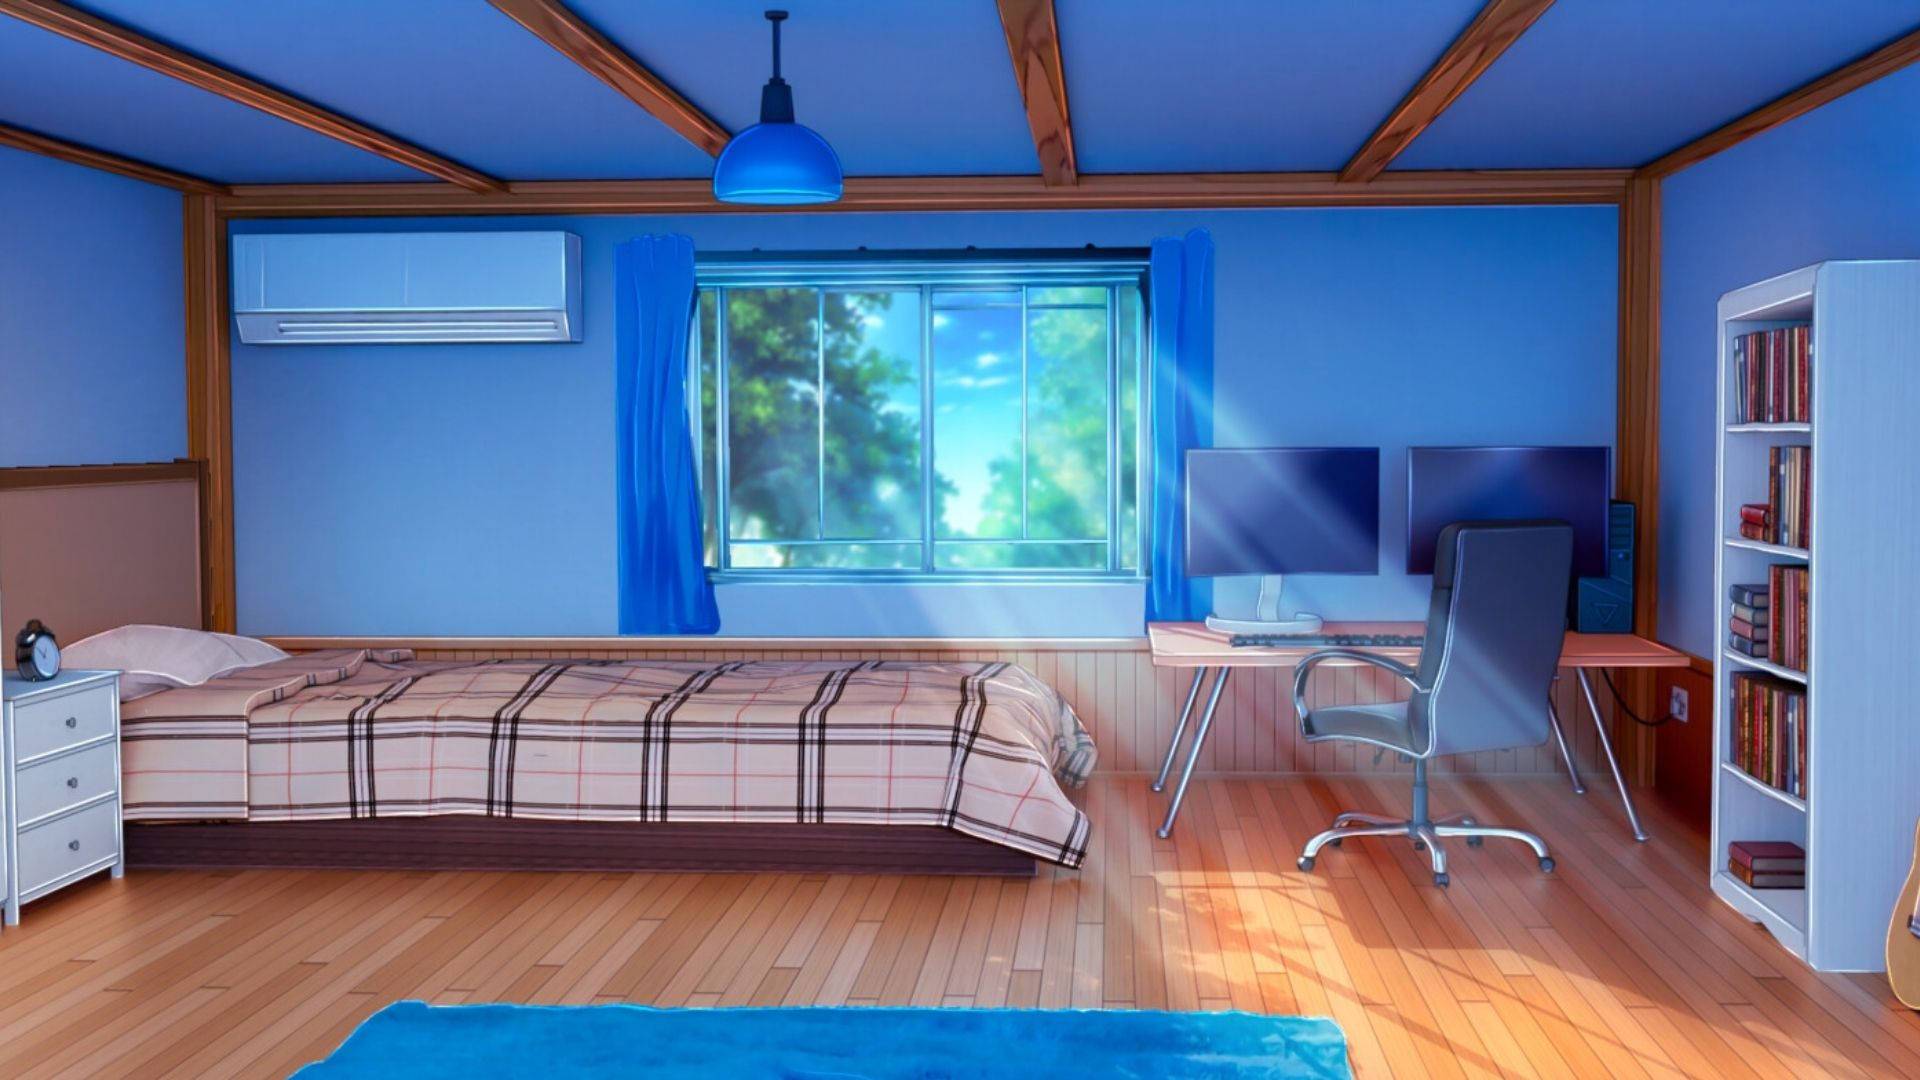 Anime Room Sun Rays